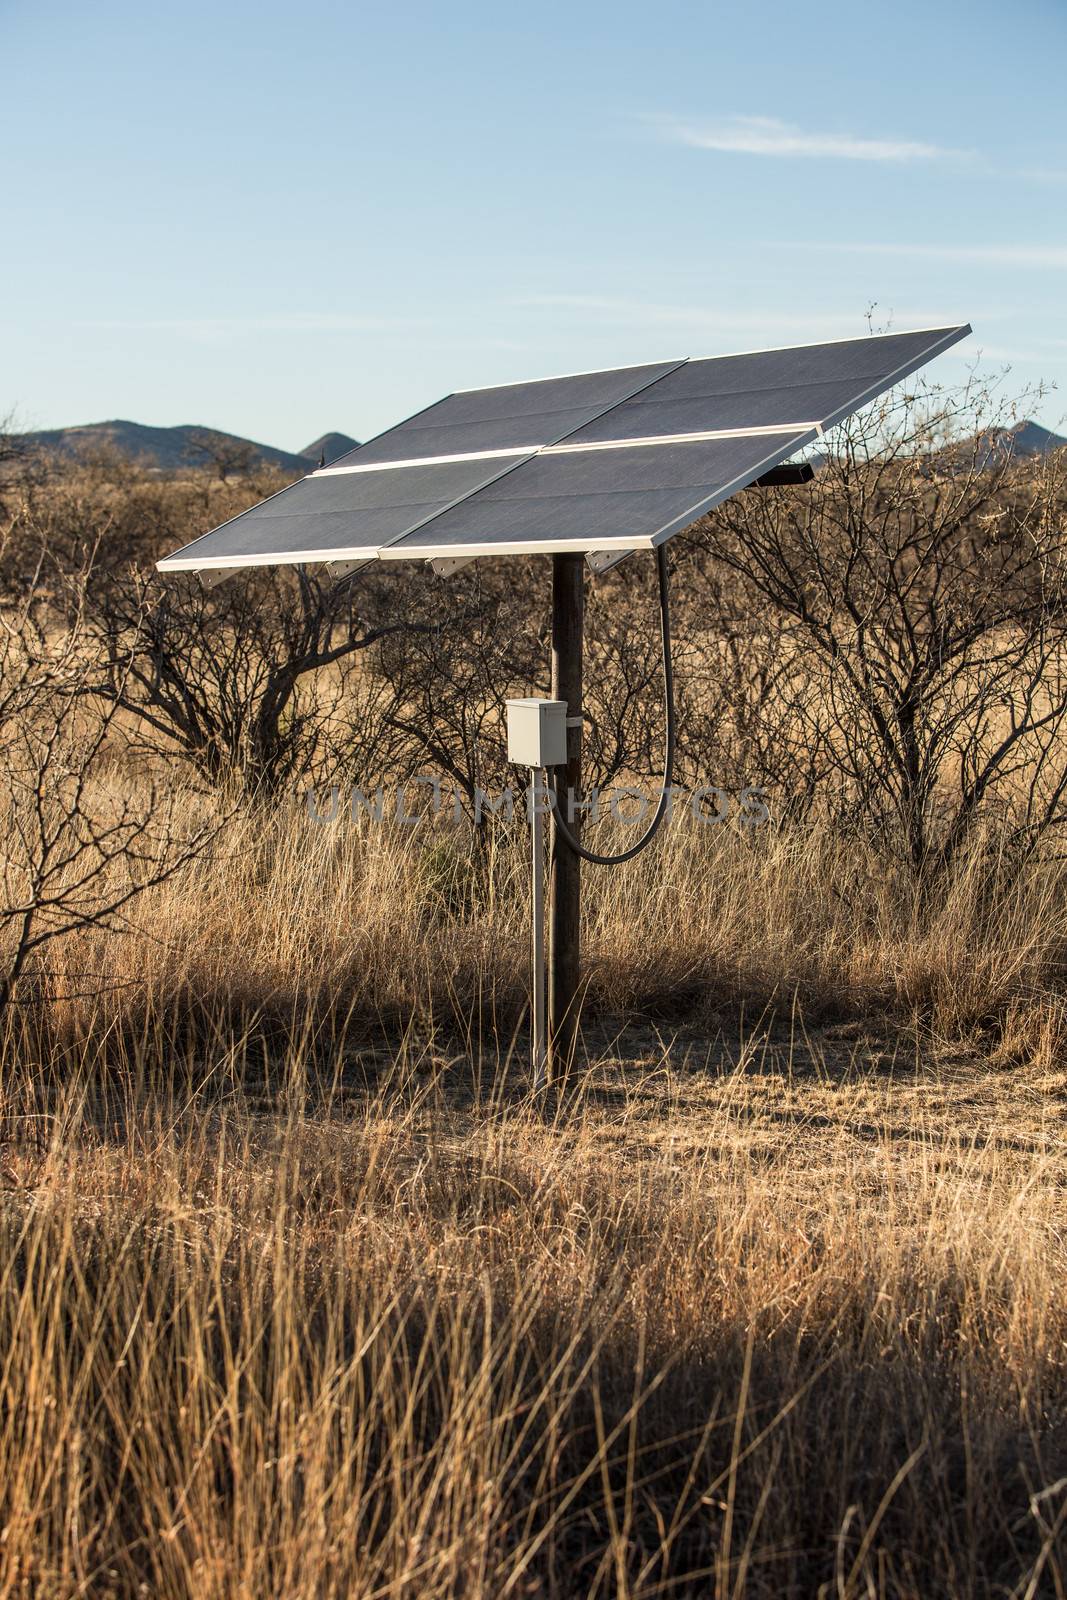 Small Solar Panel in Desert Setting